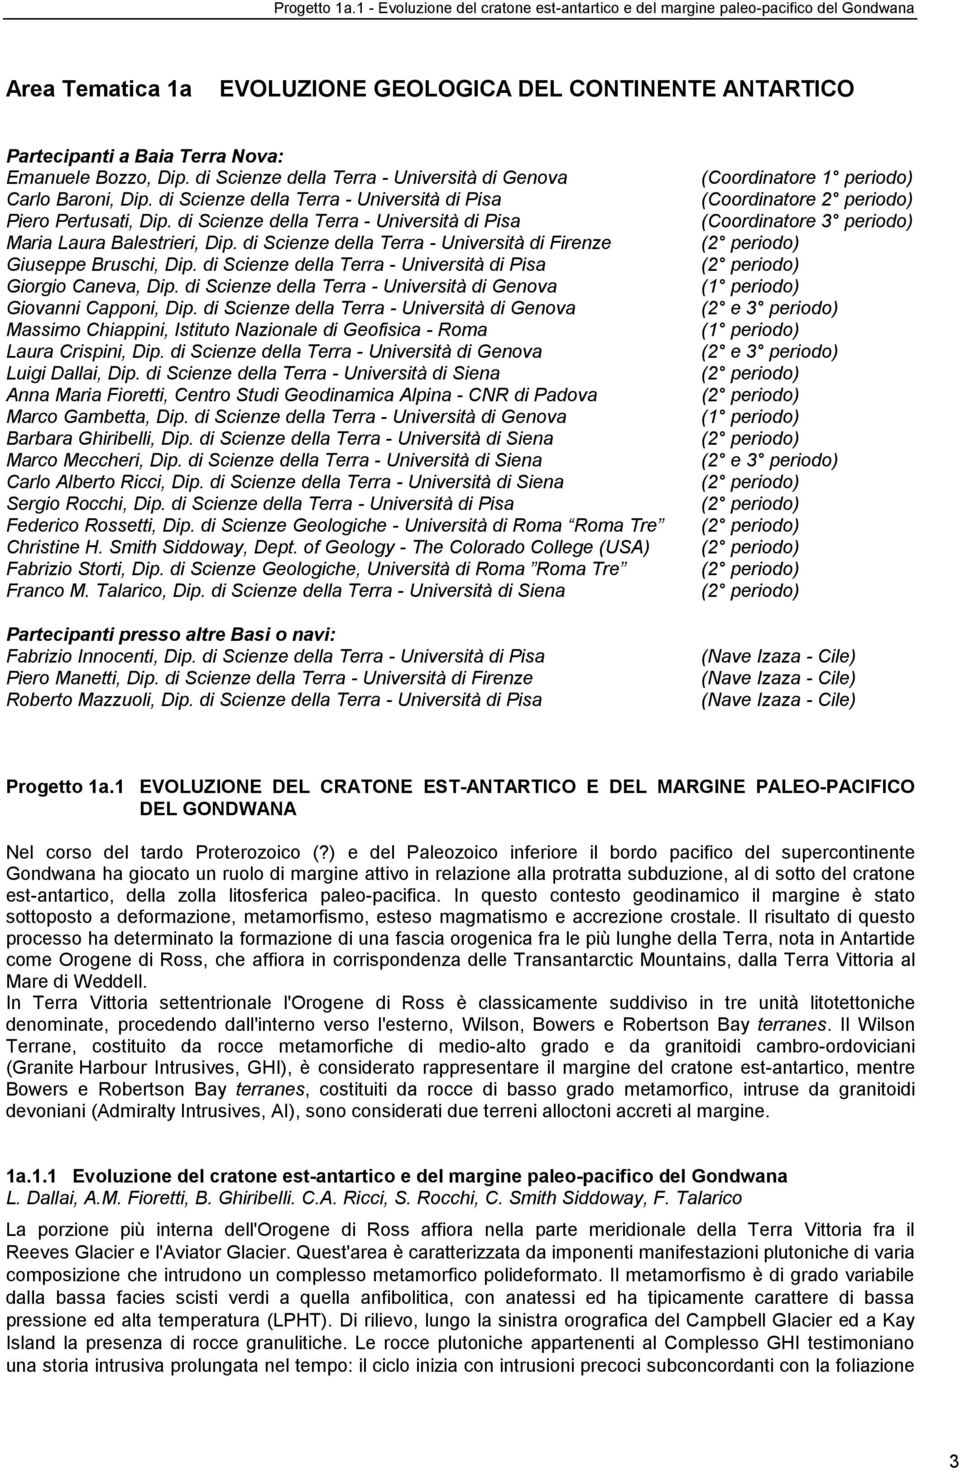 di Scienze della Terra - Università di Genova Carlo Baroni, Dip. di Scienze della Terra - Università di Pisa Piero Pertusati, Dip.